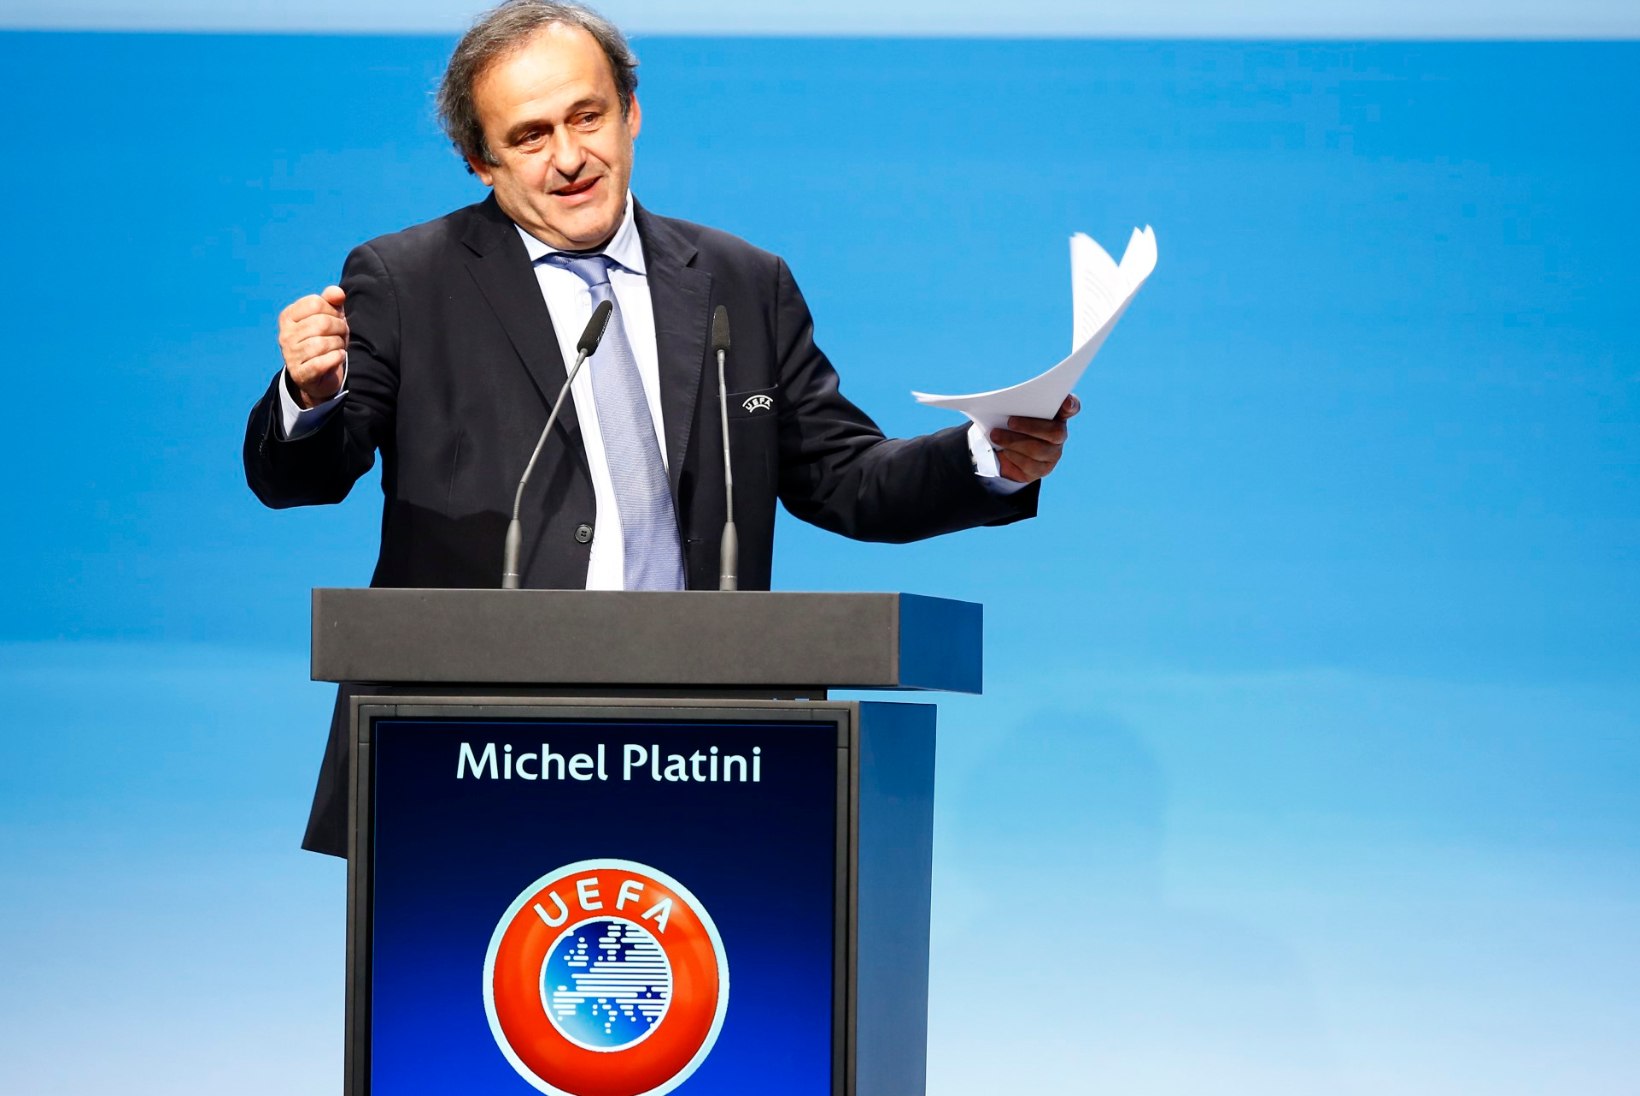 Taas UEFA presidendiks valitud Platini vandus FIFA-le armastust